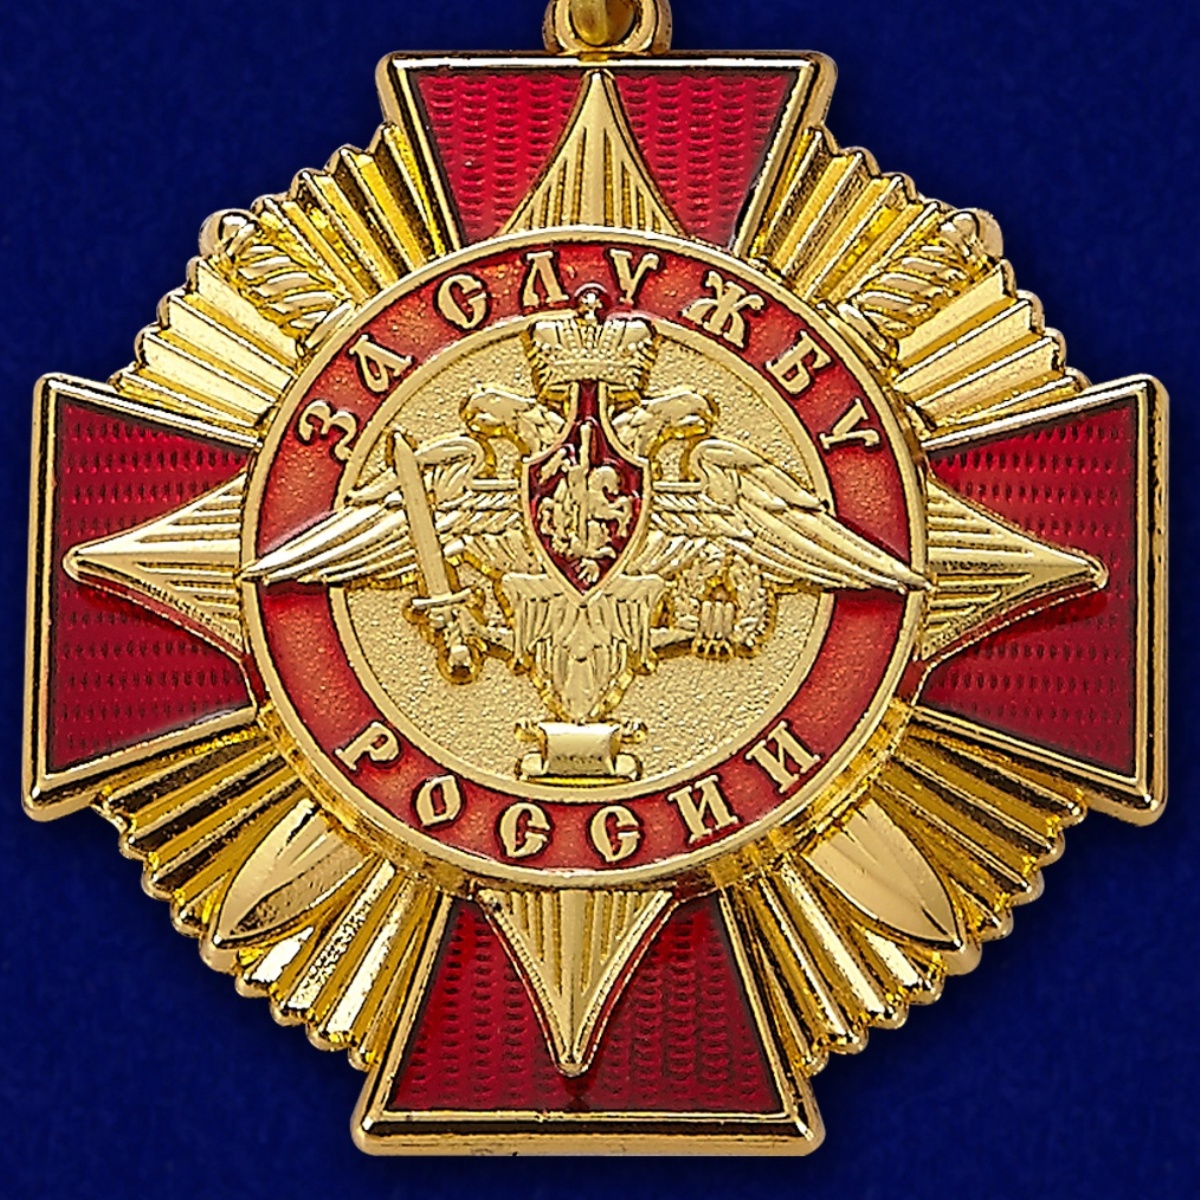 Орден "За службу России" в футляре из бархатистого флока бордового цвета 